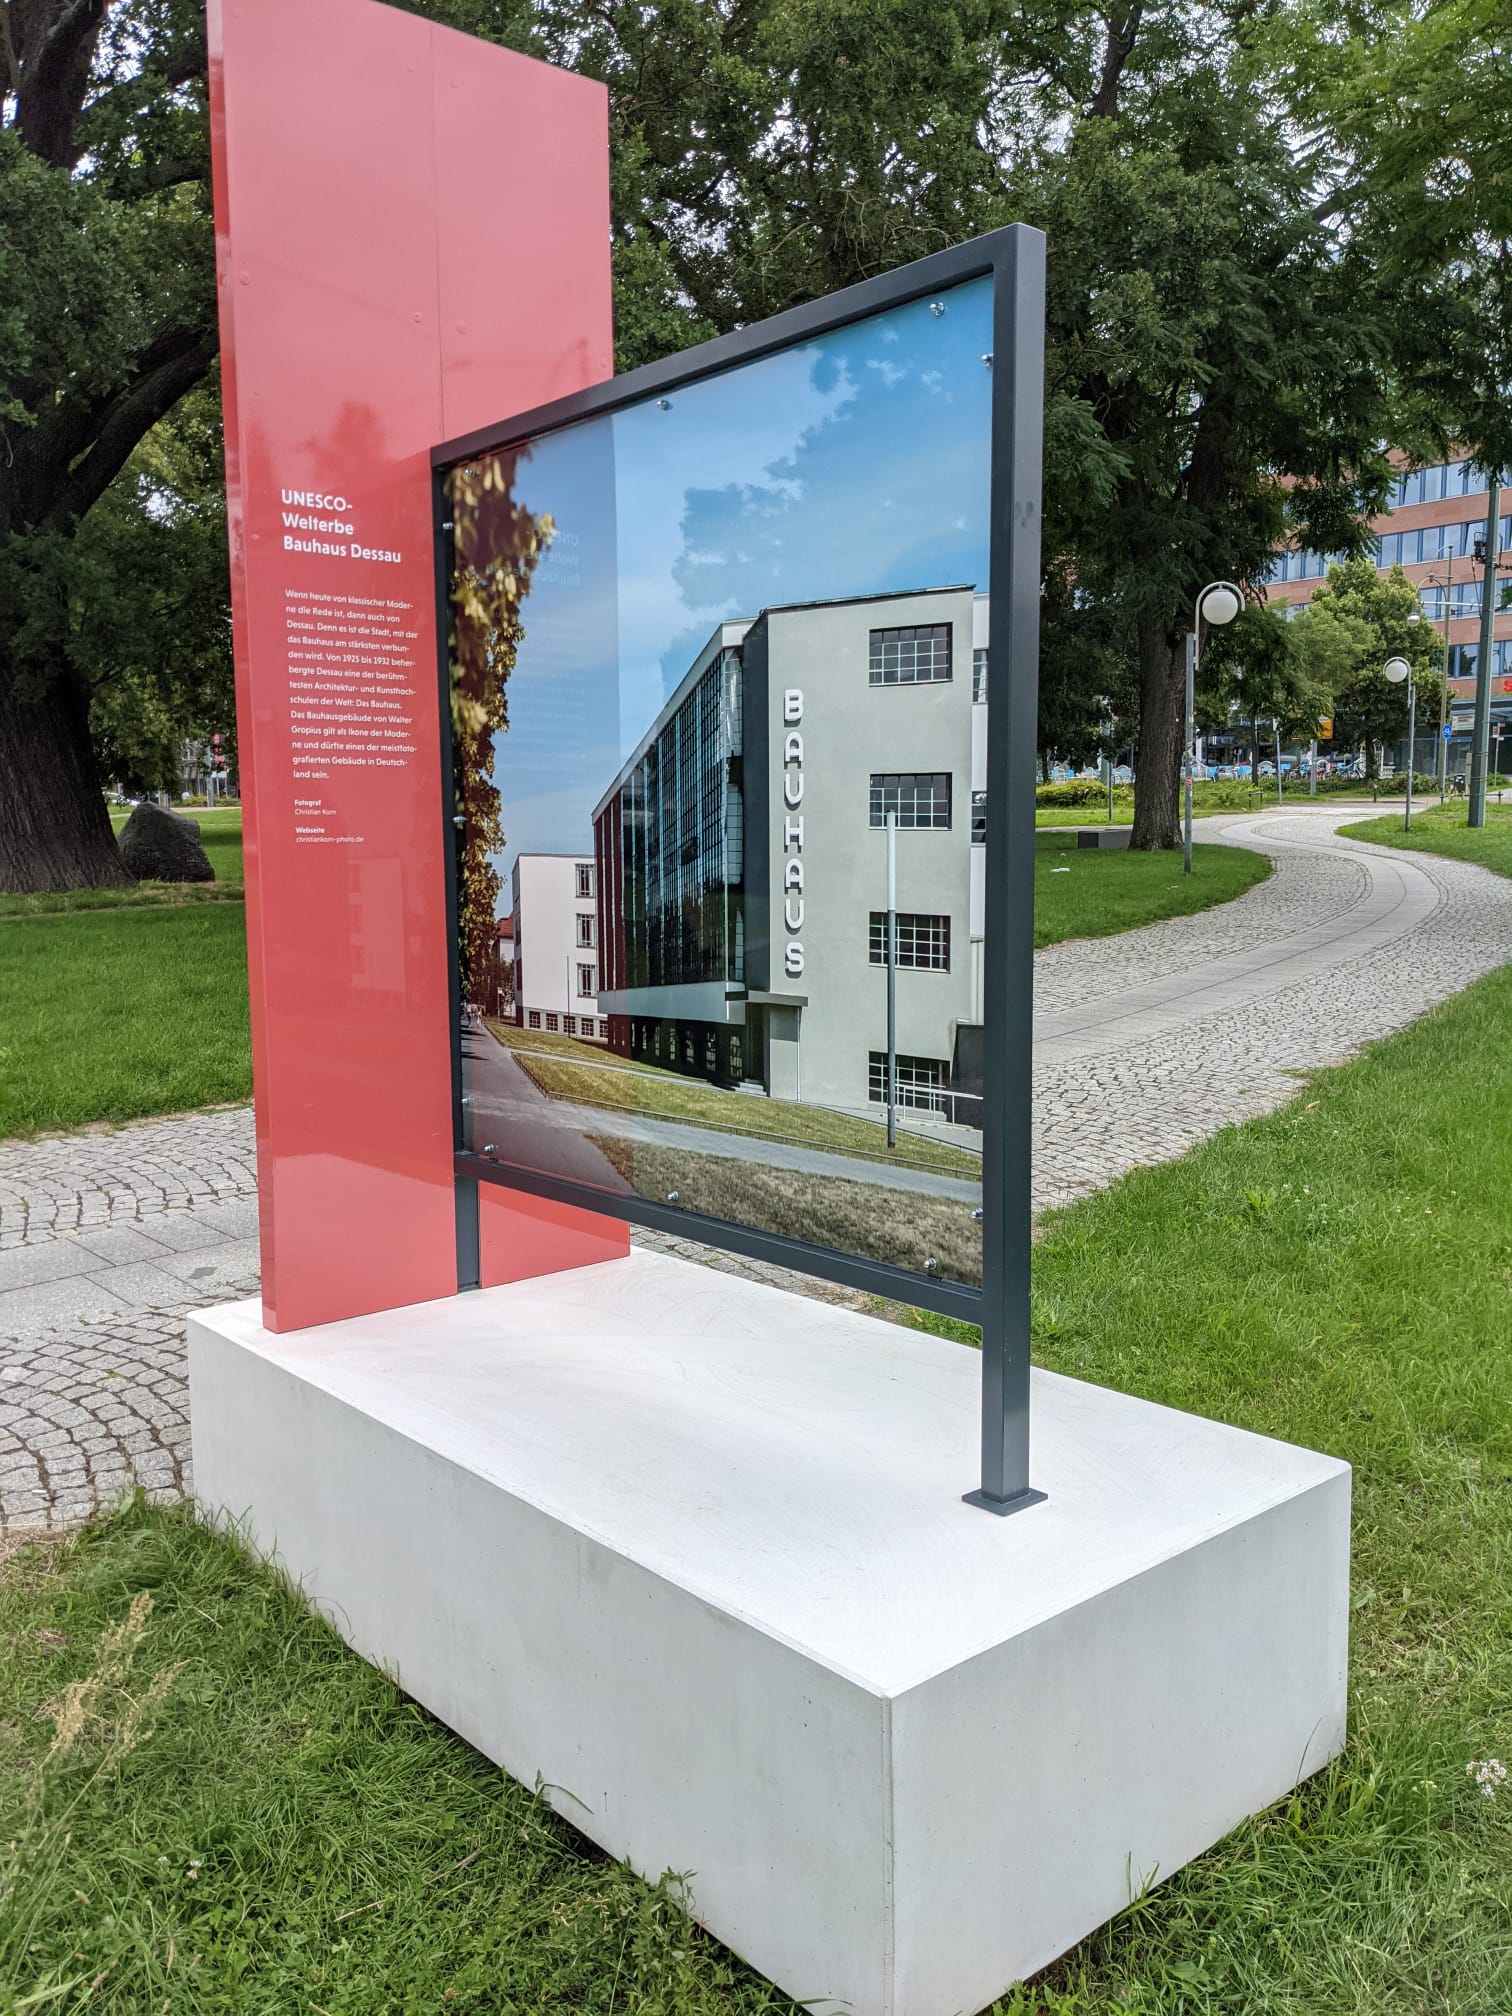 Bildbank in Dessau mit Fotomotiv